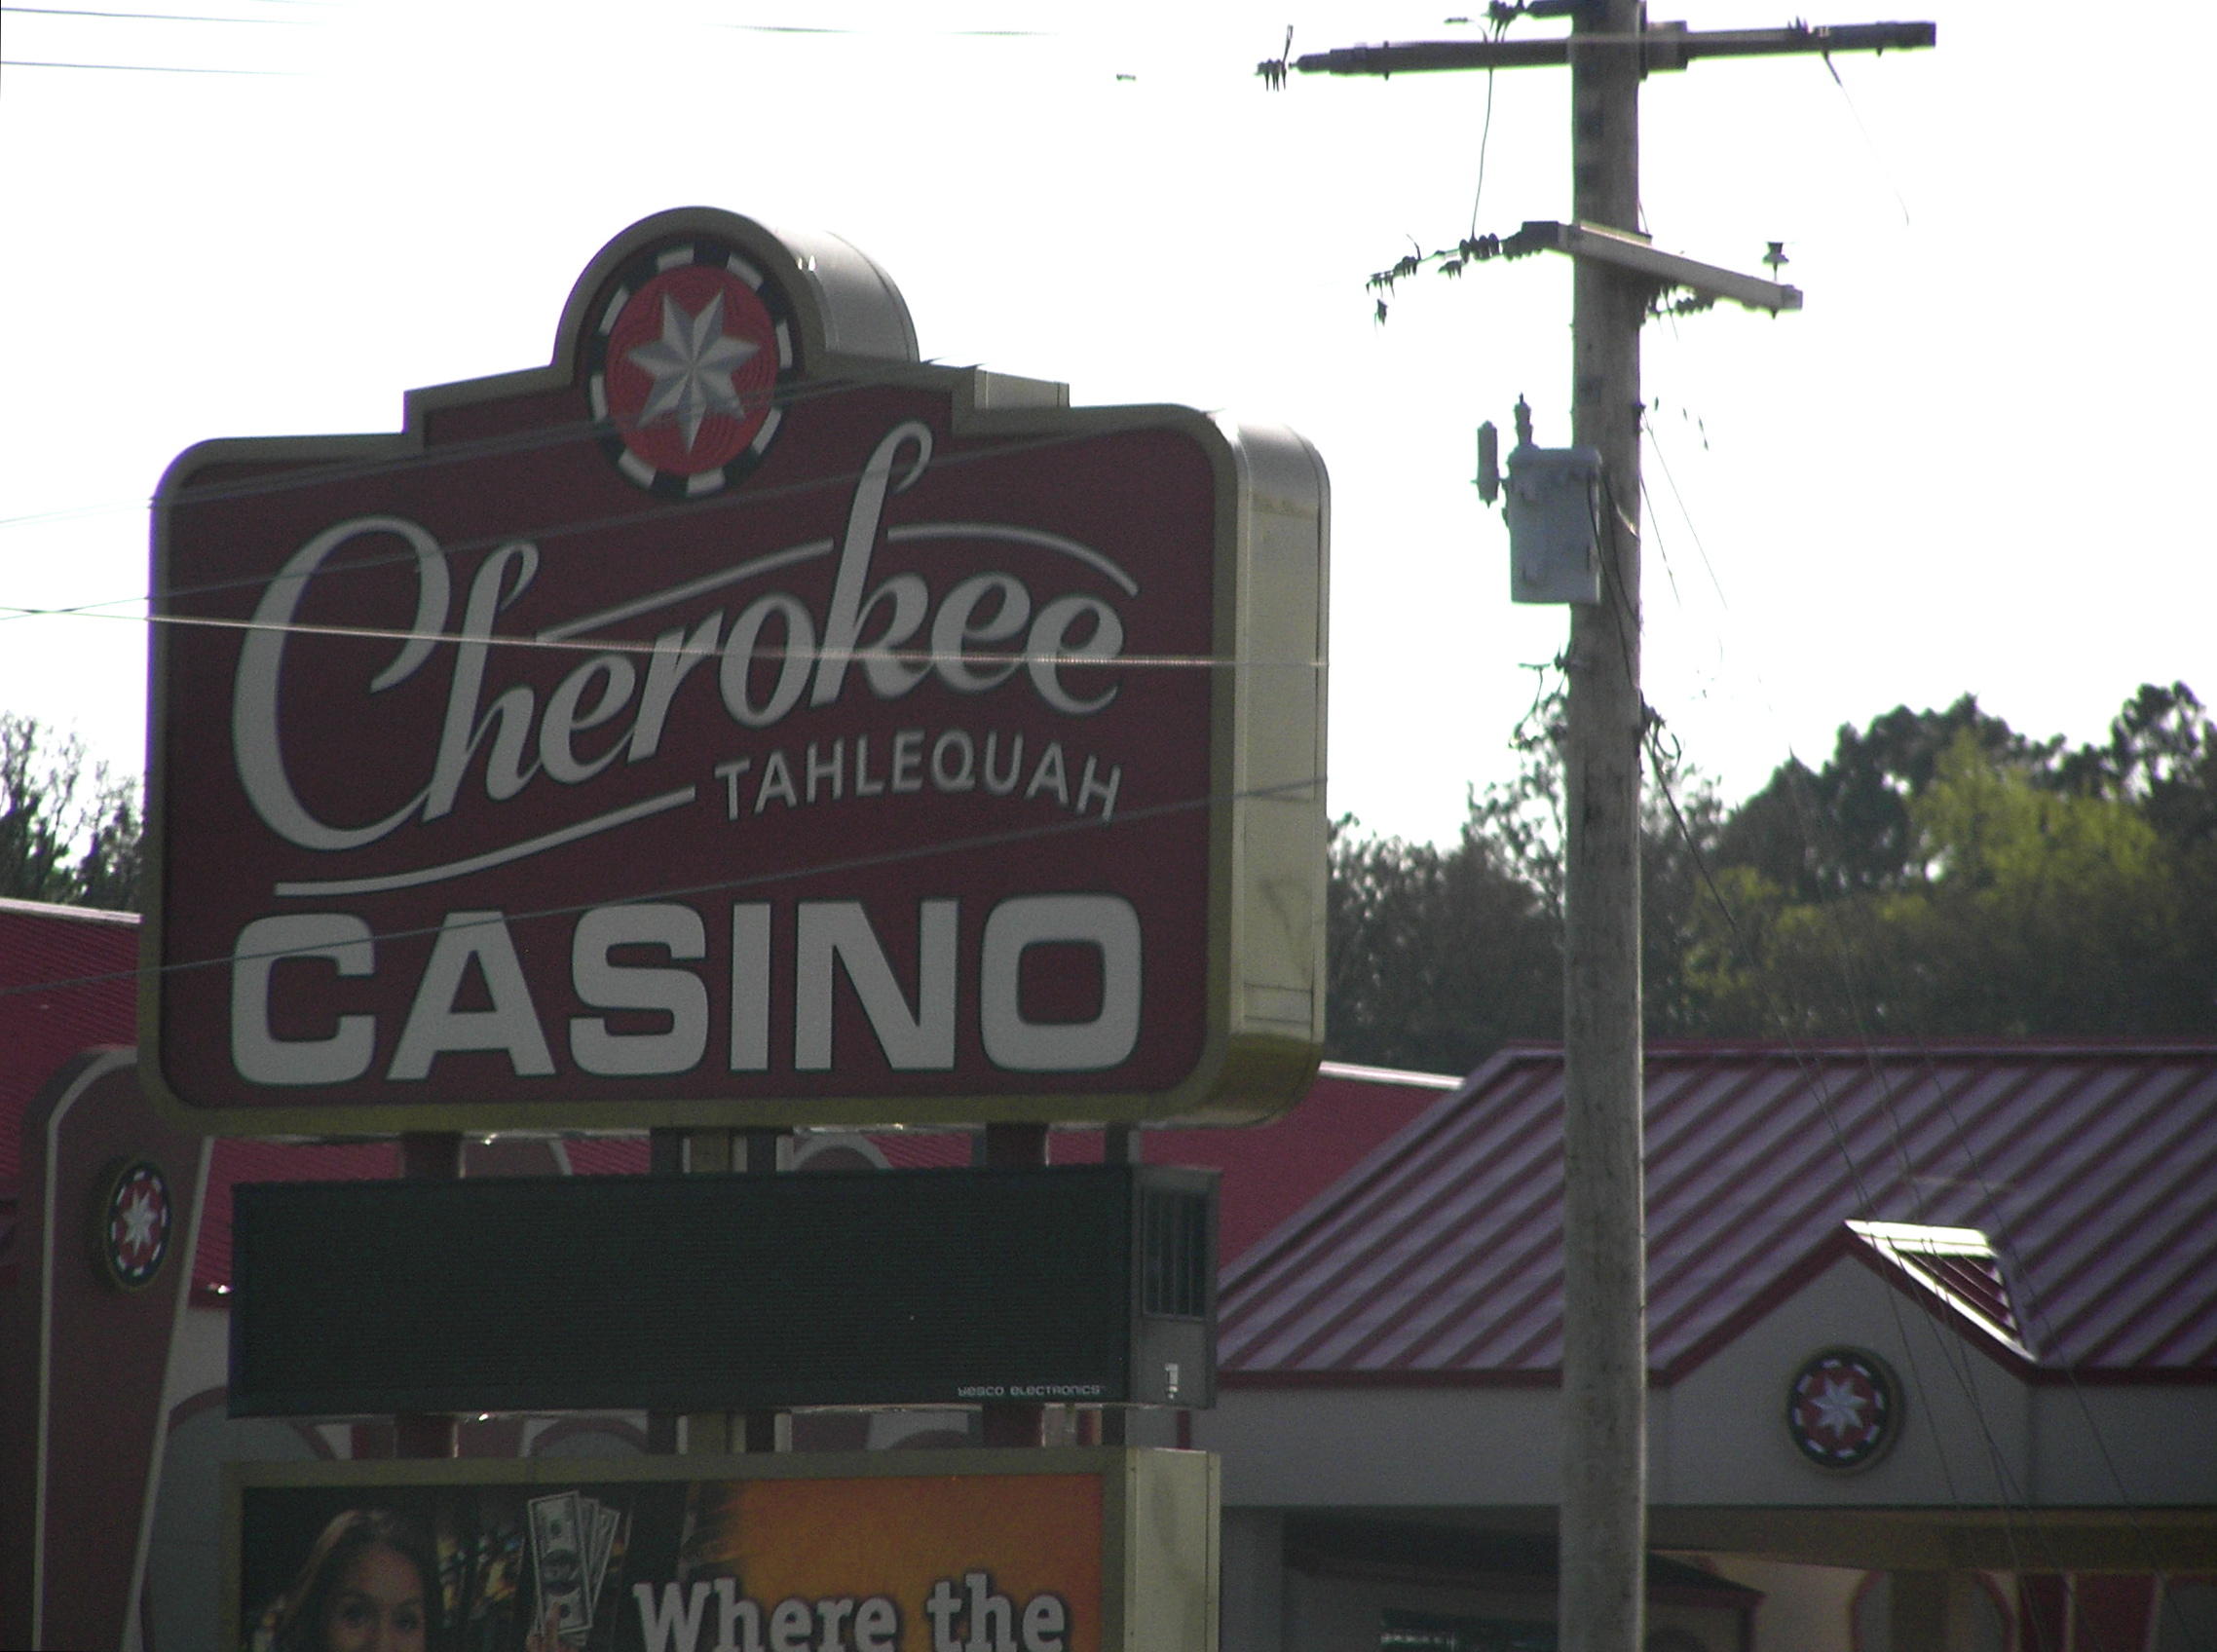 cherokee casino oklahoma hours of operation